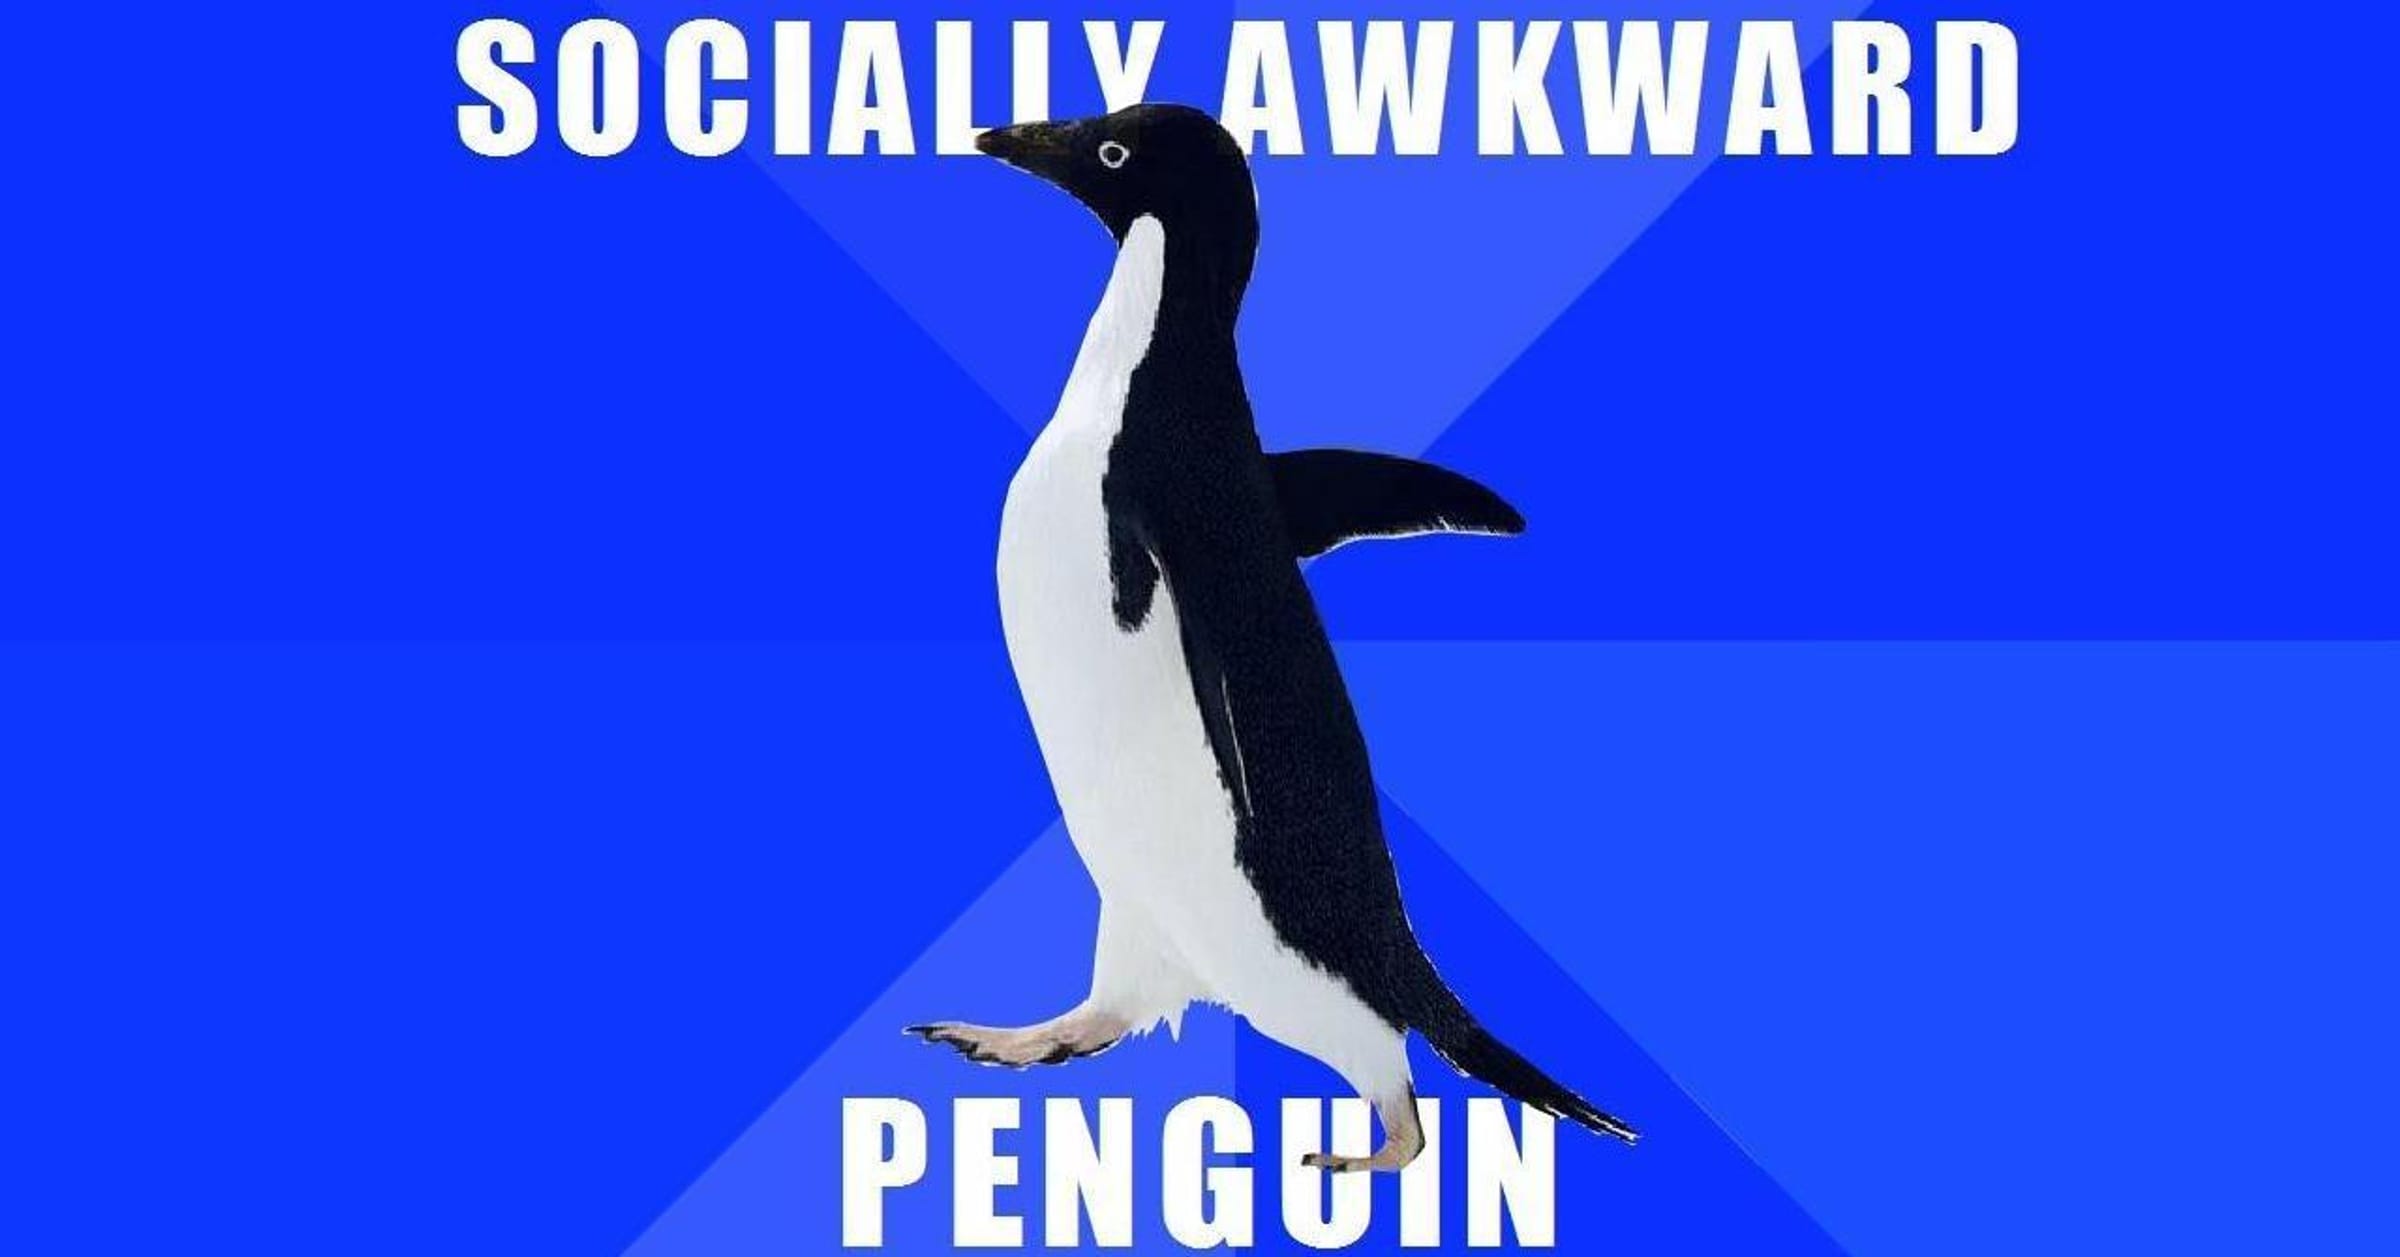 happy world penguin day meme